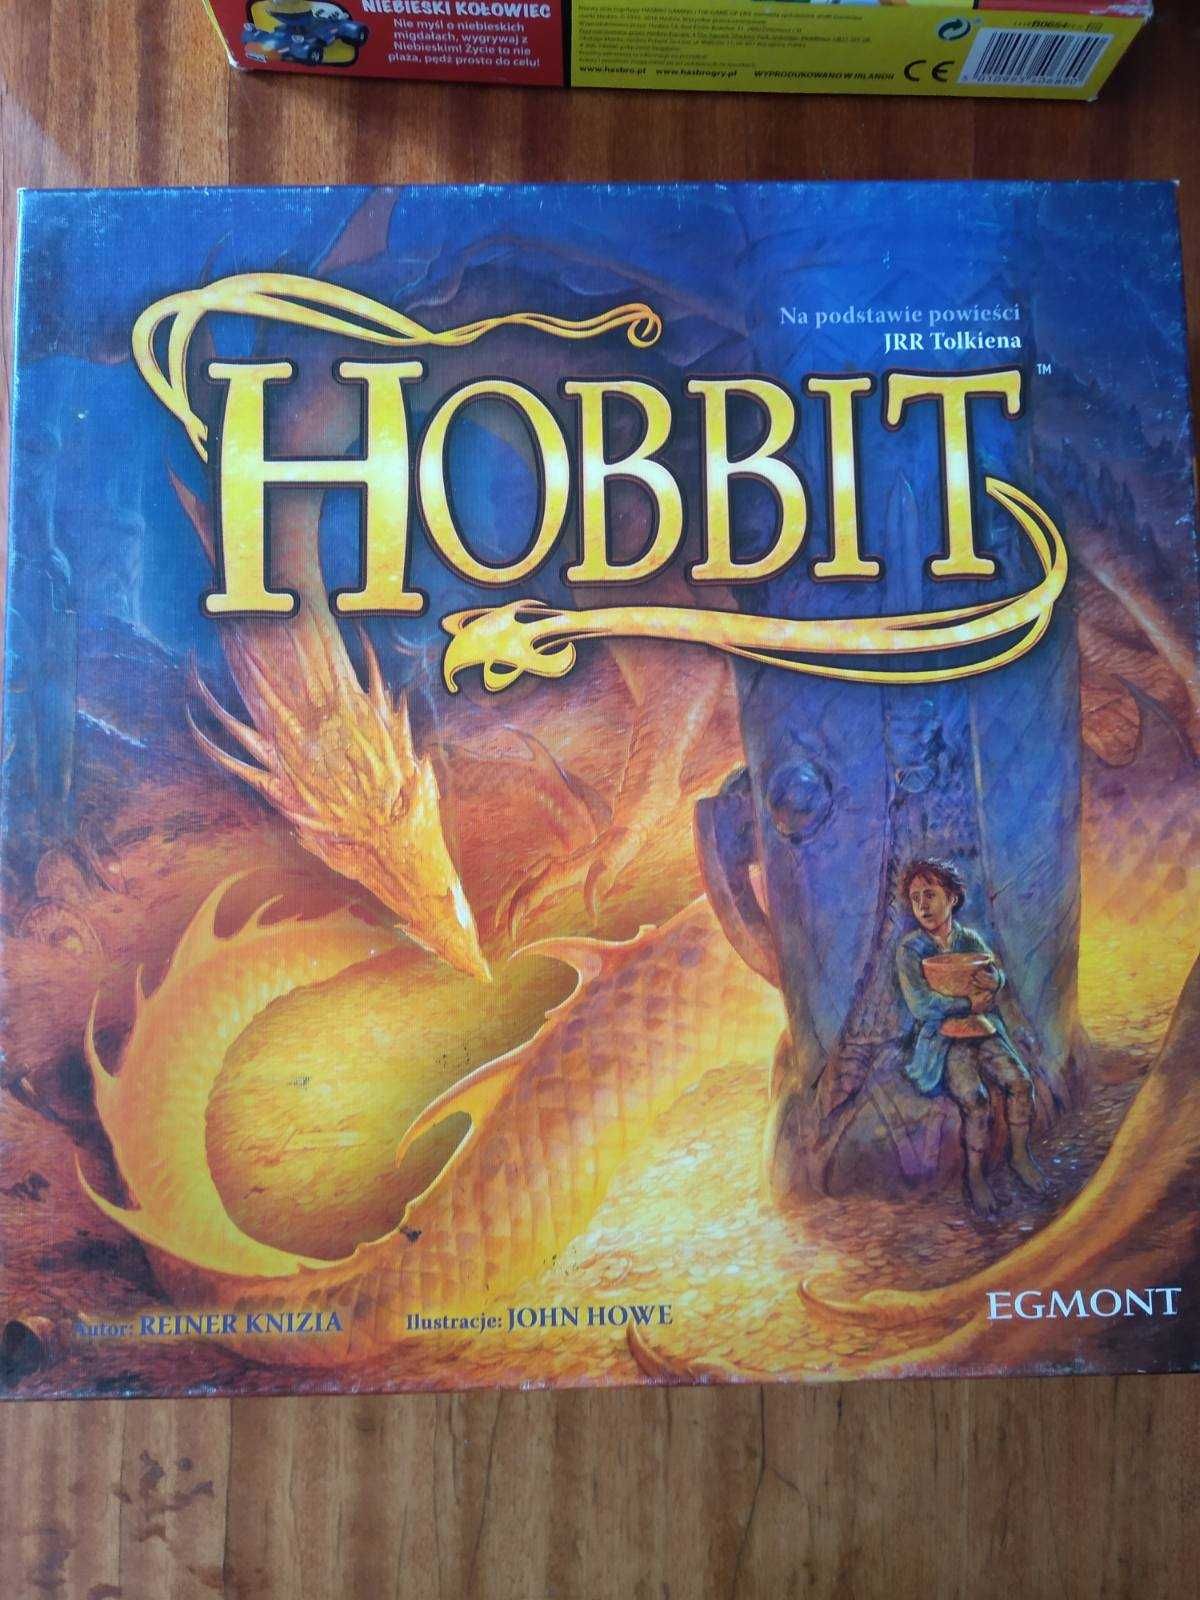 Настольная игра Hobbit Egmont на польском языке, с Европы